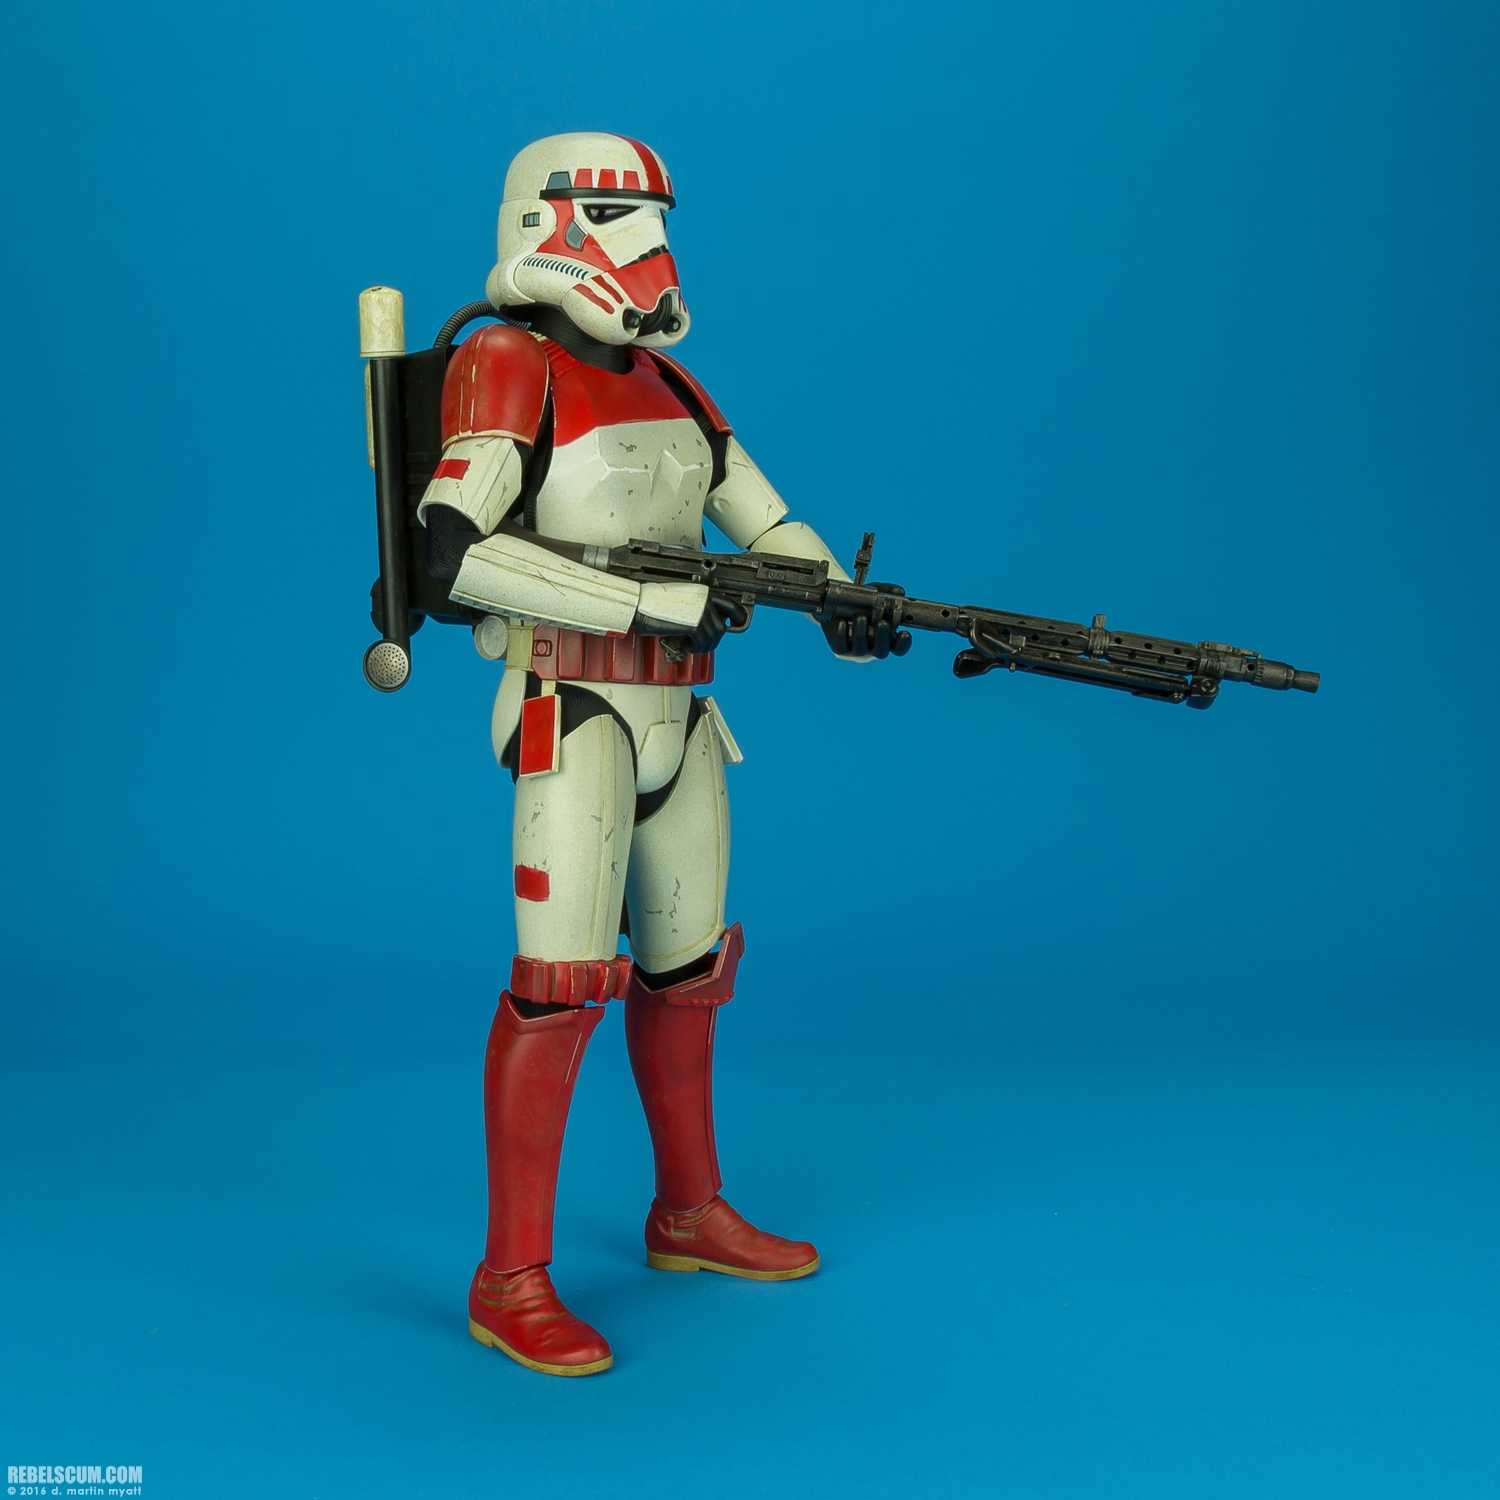 VGM020-Shock-Trooper-Star-Wars-Battlefront-Hot-Toys-006.jpg